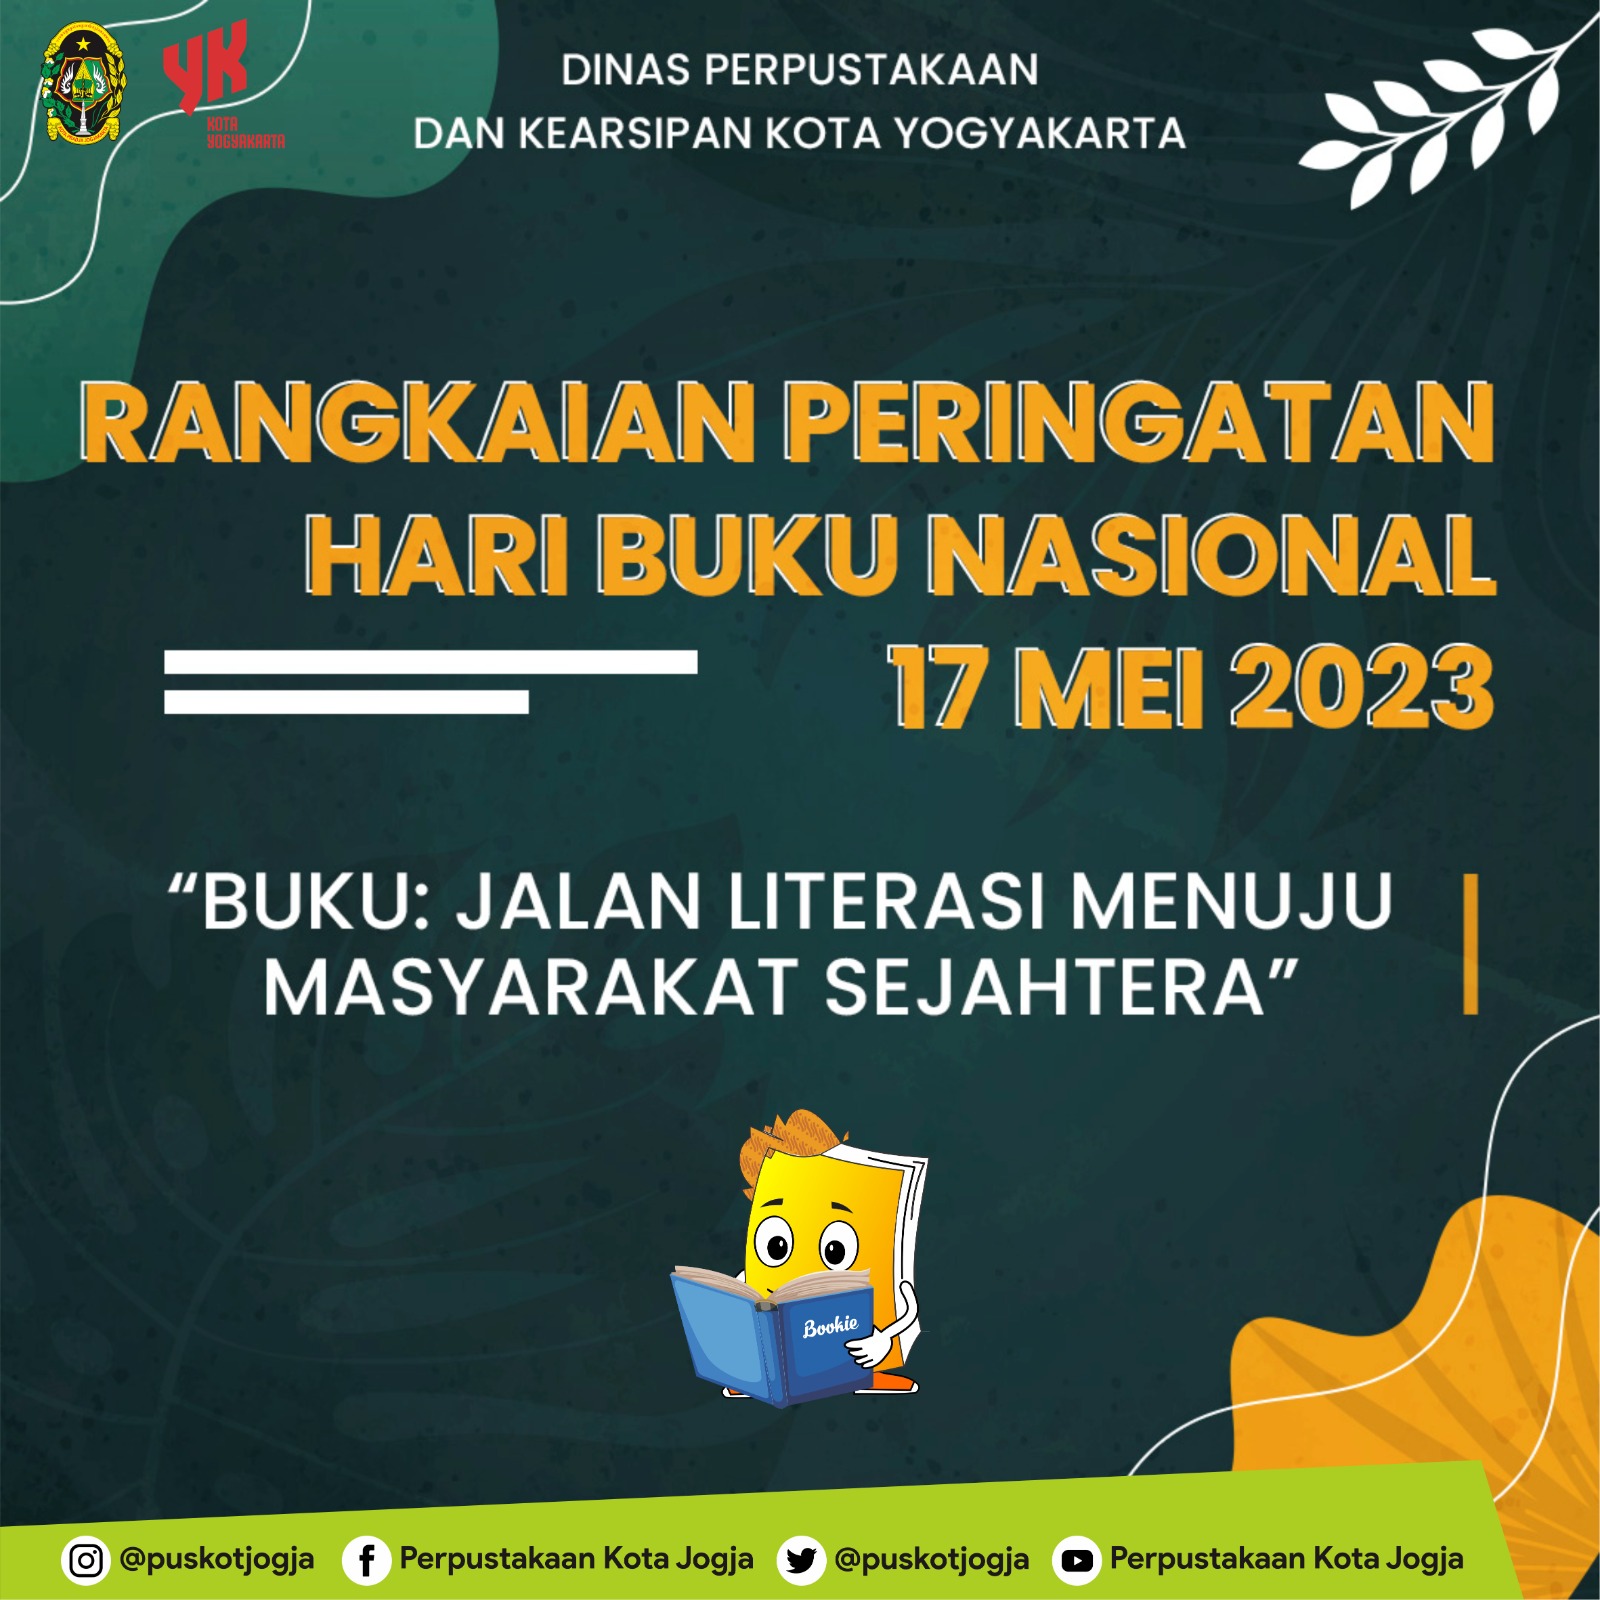 Peringati Hari Buku Nasional, Perpustakaan Kota Yogyakarta Selenggarakan Beragam Kegiatan Literasi